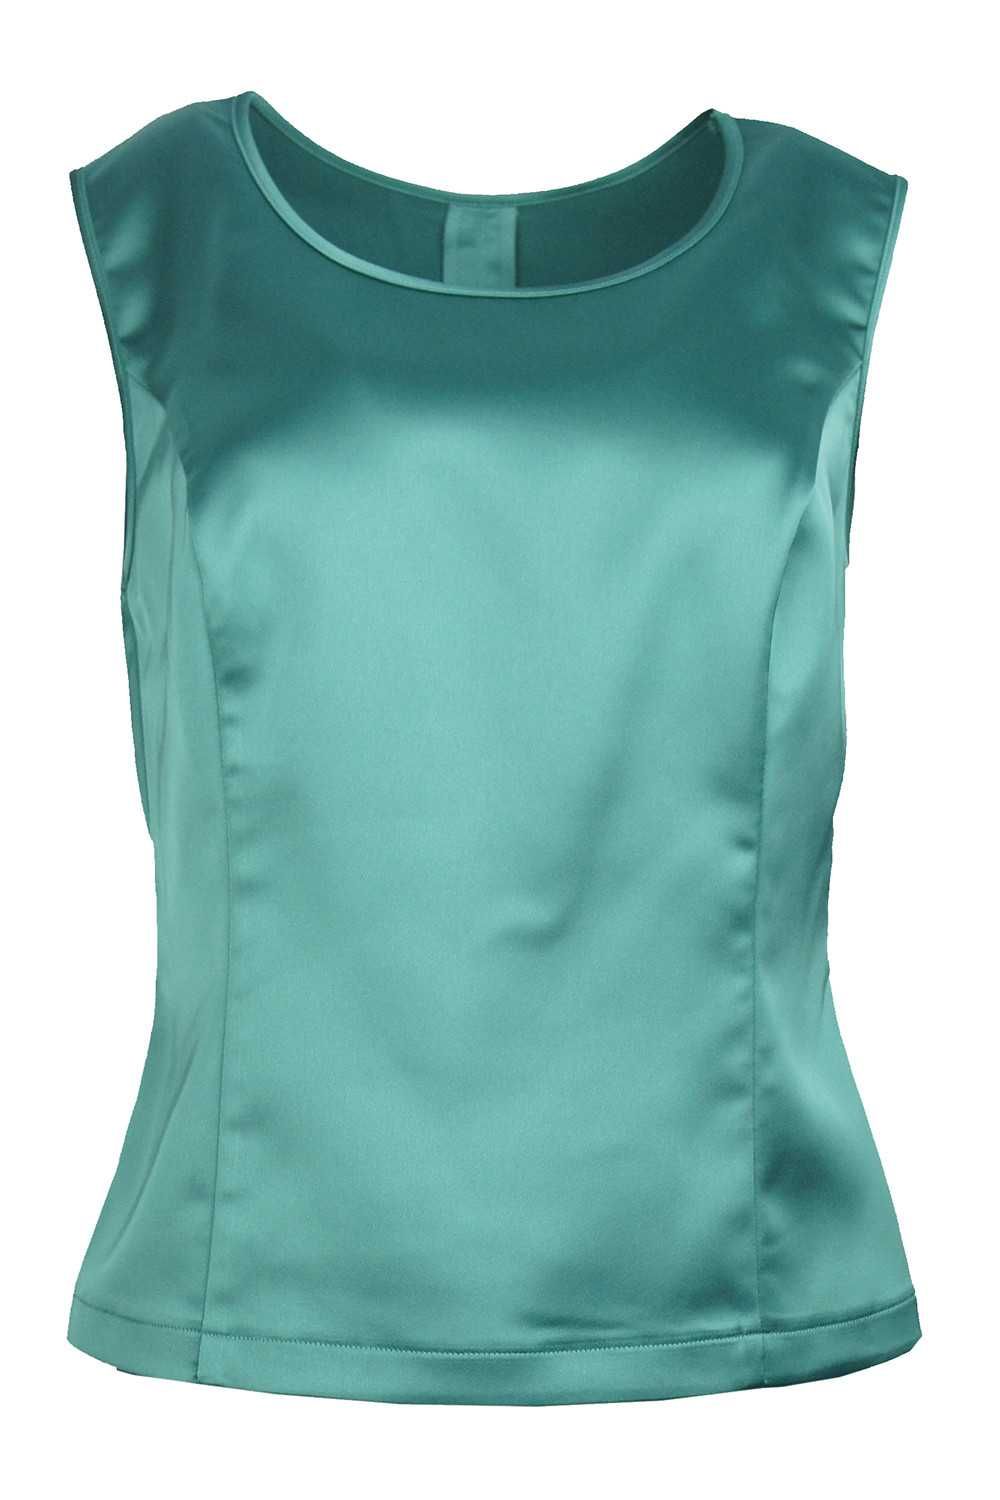 Блуза изумрудного цвета, без рукавов ,торговой марки "Дж. Эль".J&L р54